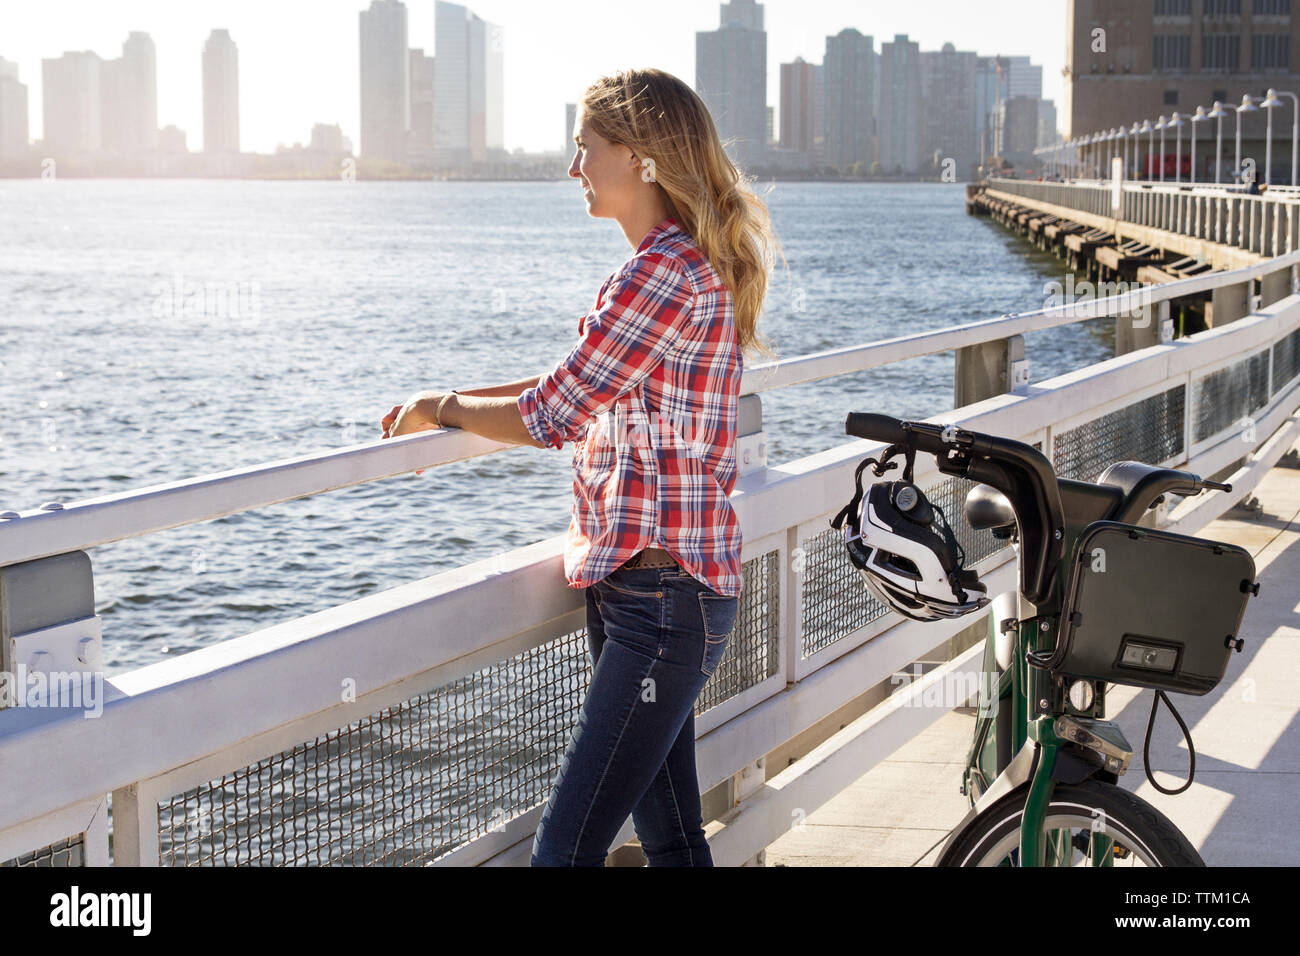 Frau mit Fahrrad auf Brücke am Fluss in der Stadt Stockfoto